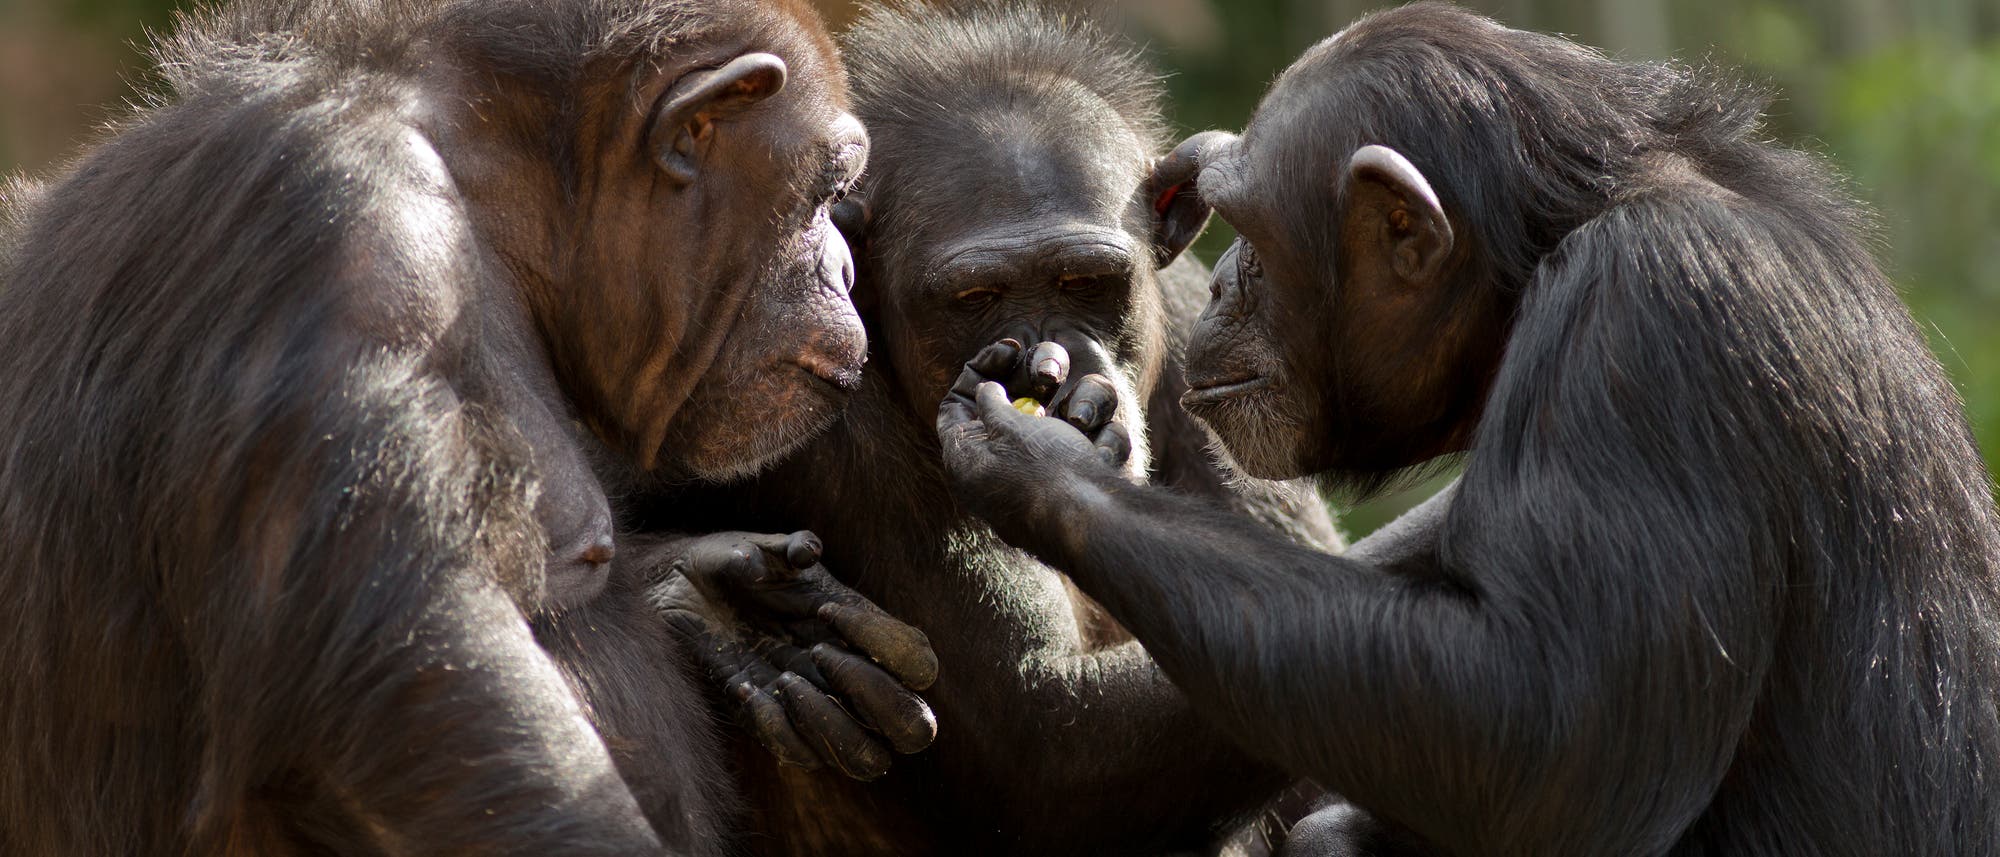 Drei Schimpansen sitzen zusammen